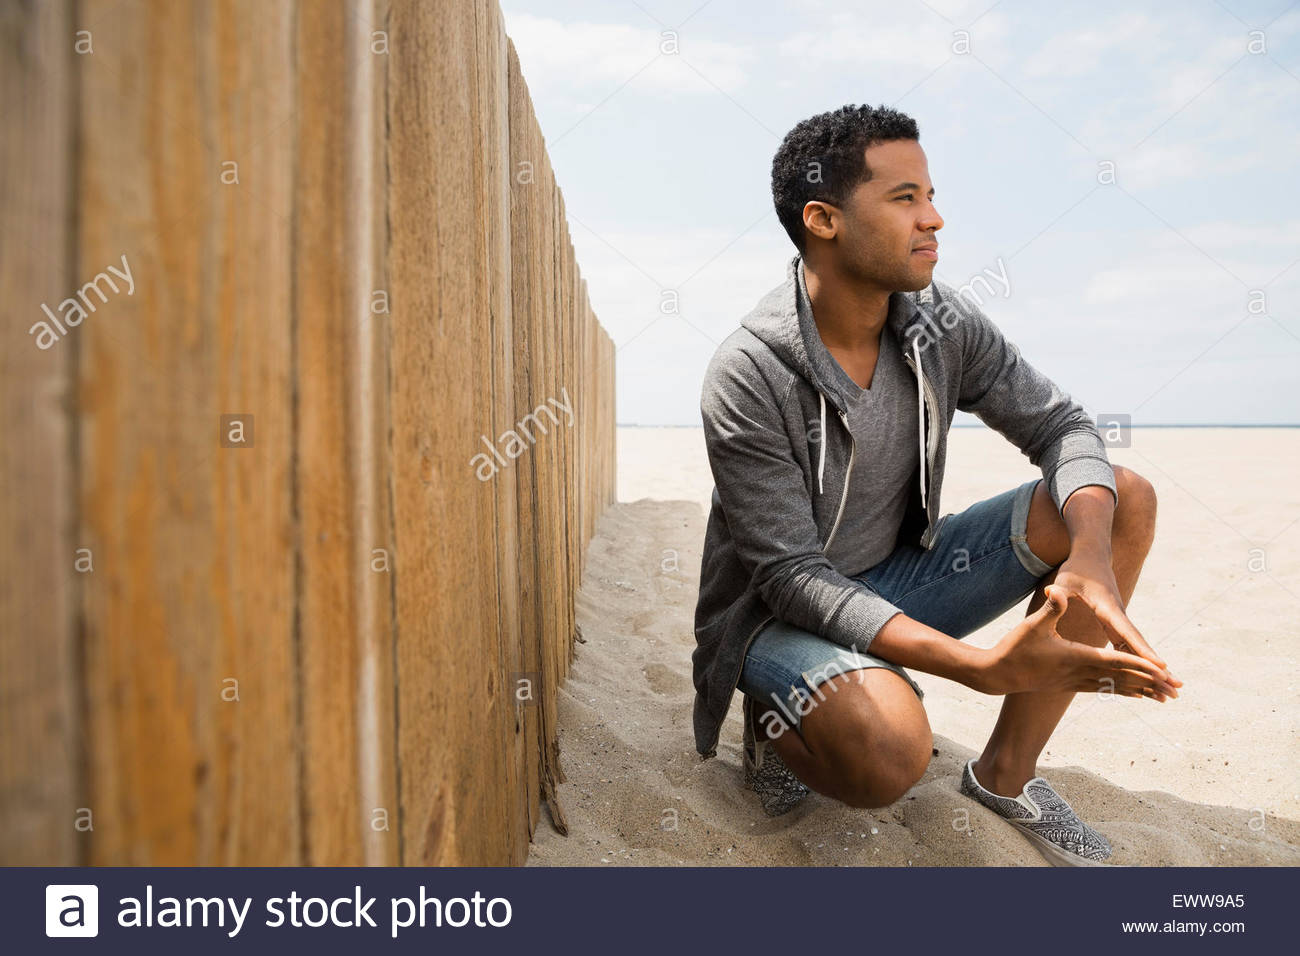 Man crouching on beach along wall Stock Photo